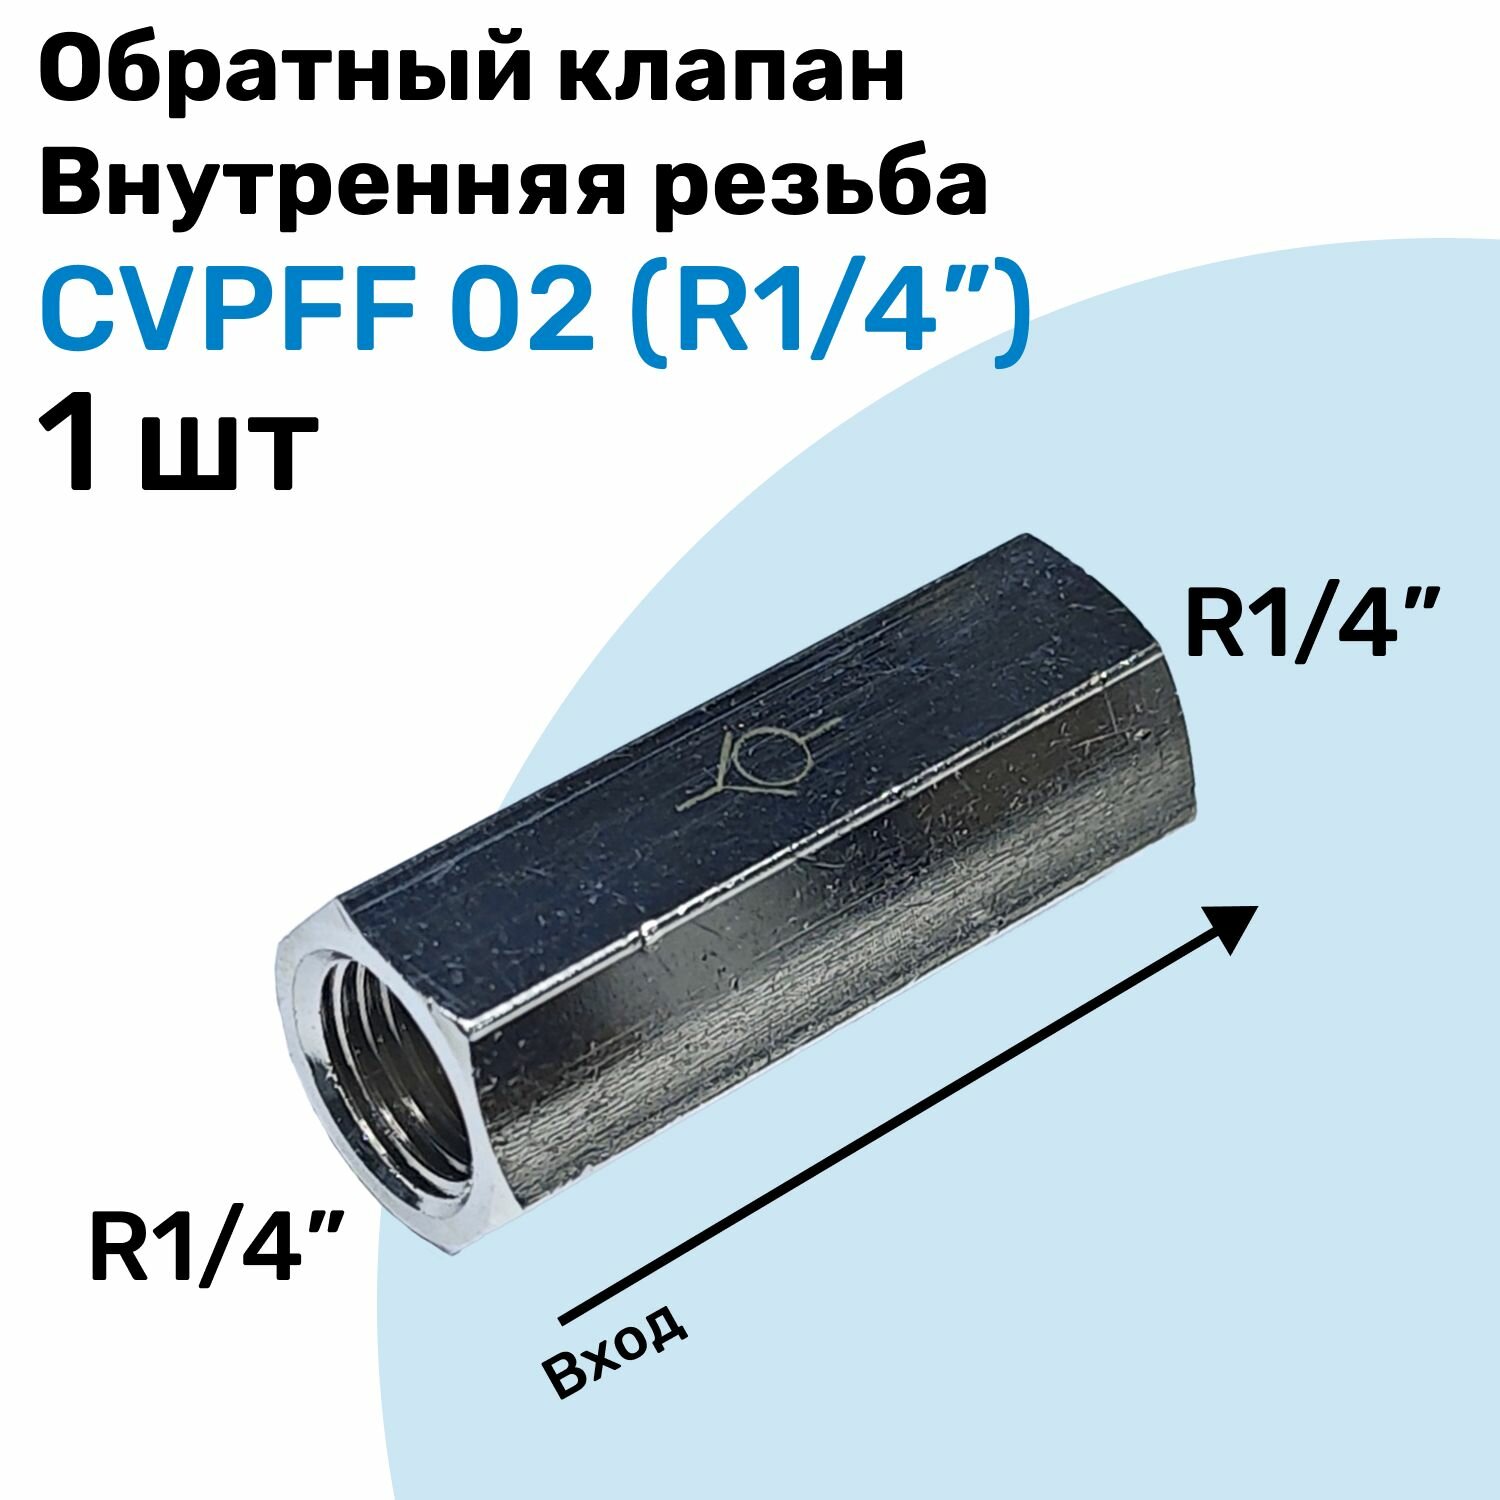 Обратный клапан латунный CVPFF 02 Резьба - R1/4" Внутренняя резьба Пневматический клапан NBPT